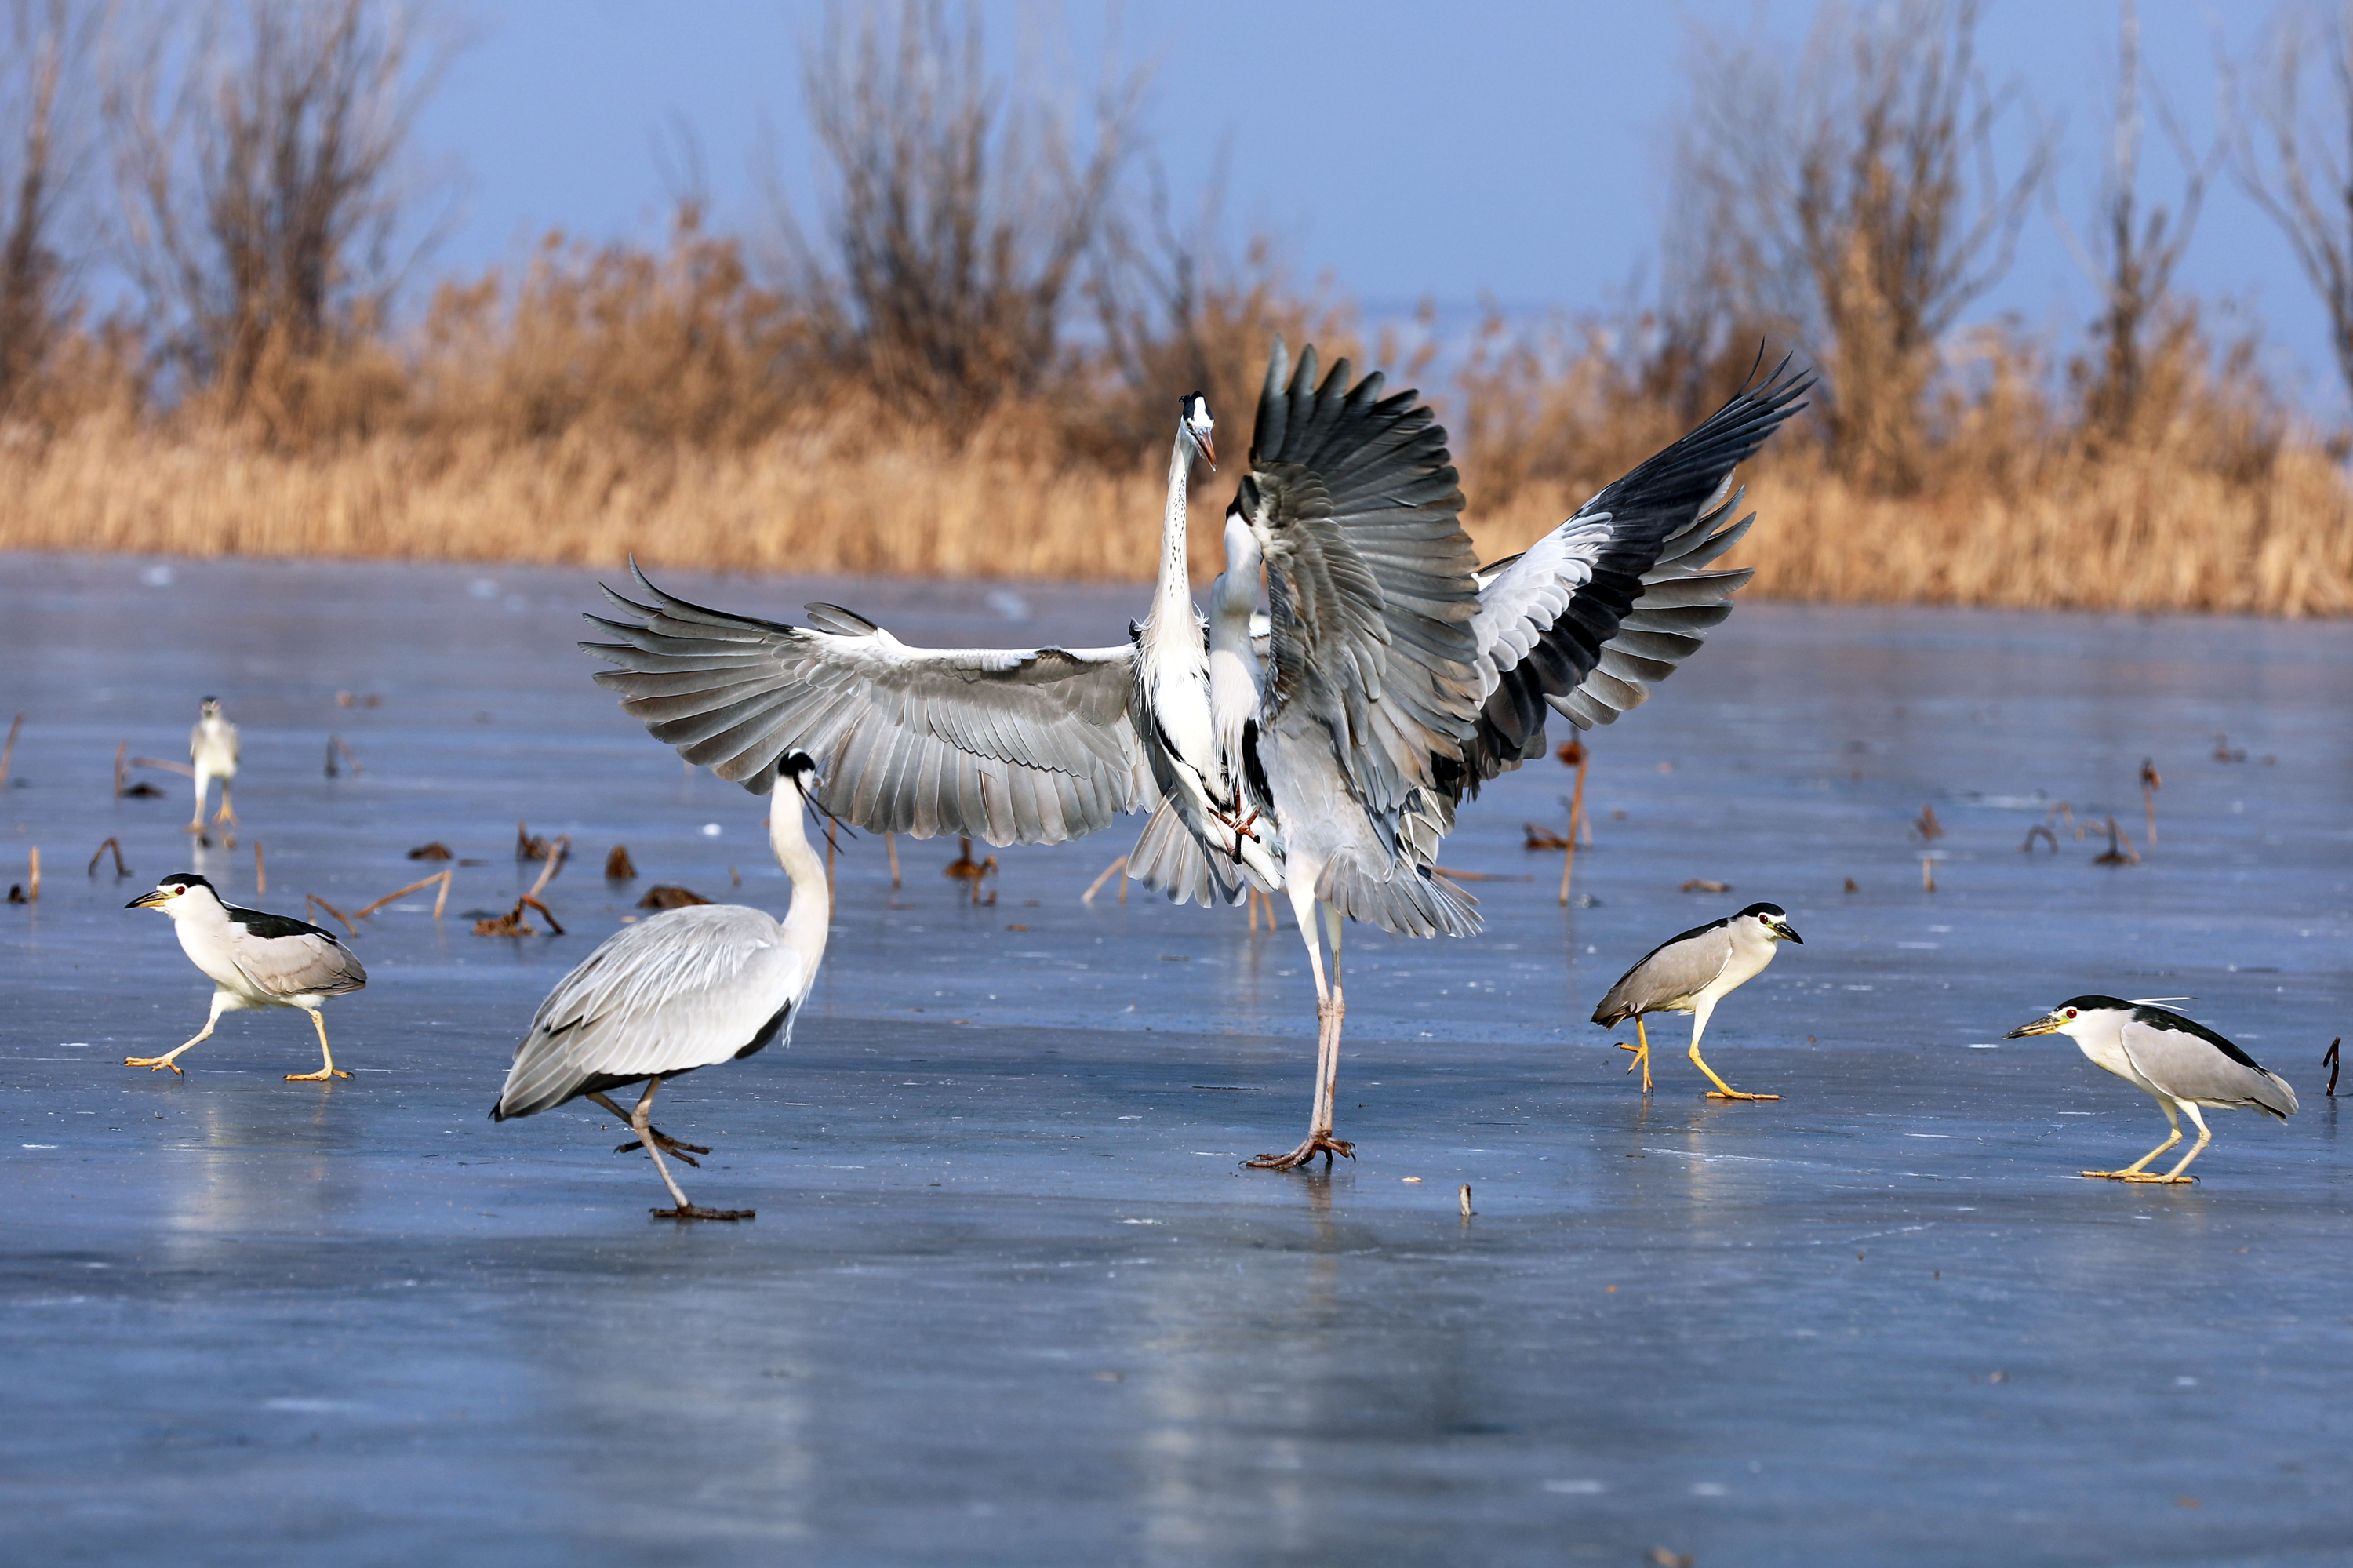 在衡水湖荷花园附近,一群鹭科鸟类在冰封的湖面上或悠闲漫步,或腾空